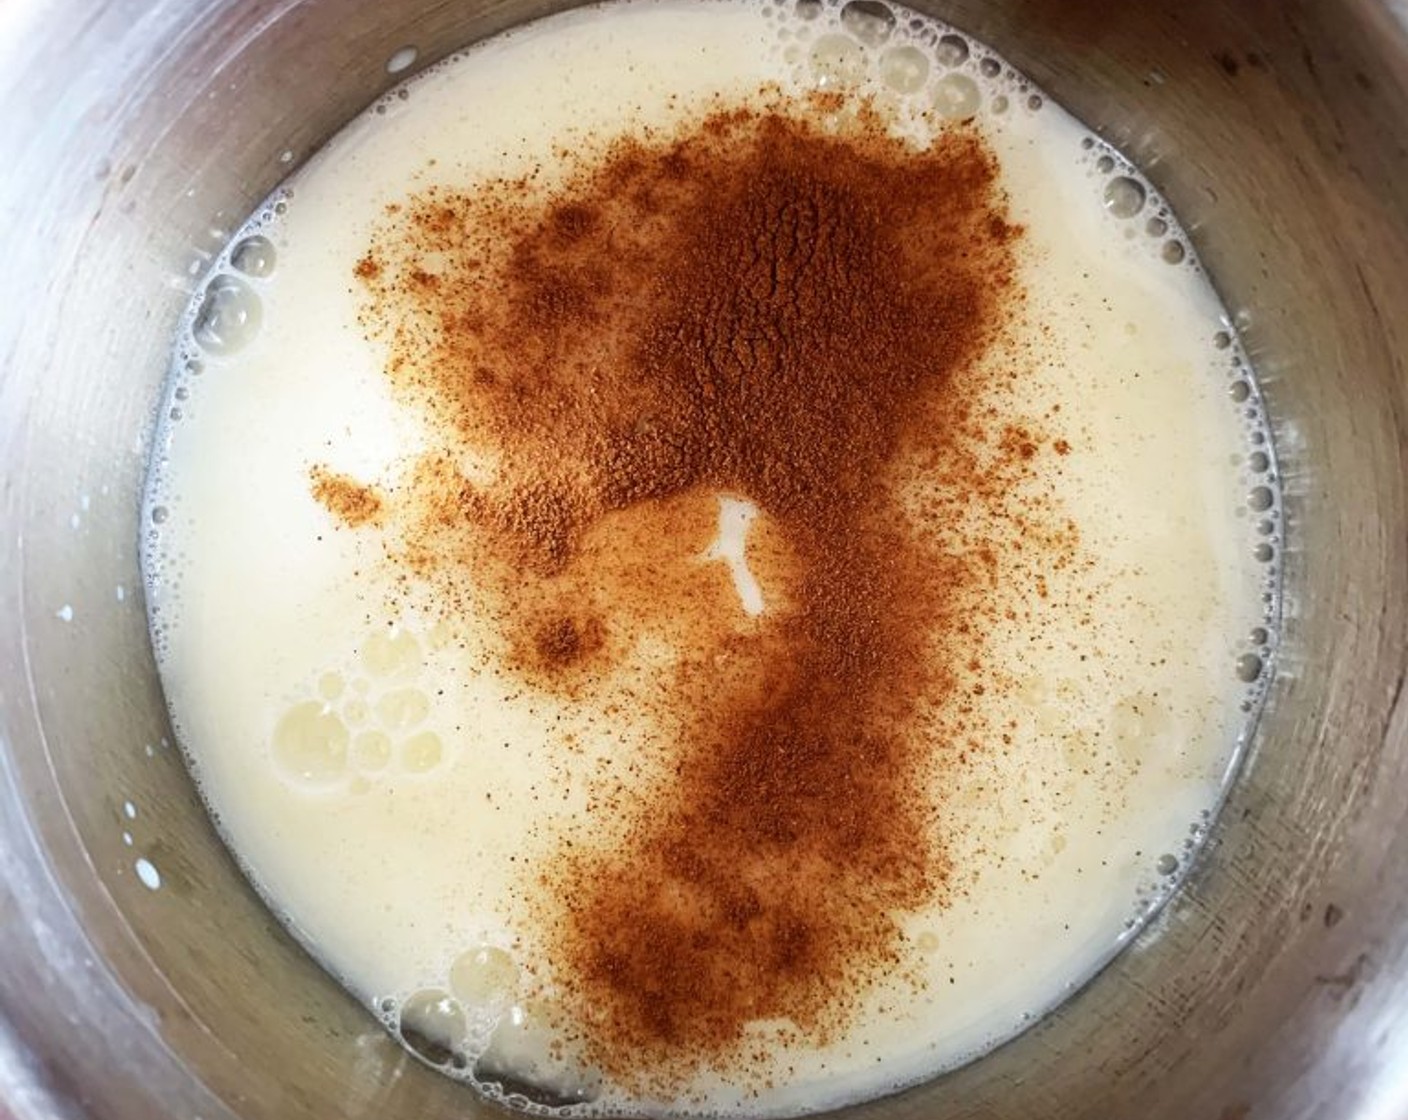 step 1 In a saucepan bring Milk (1/3 cup), Egg (1/2 cup), Agar-Agar Powder (1/2 tsp), Ground Cinnamon (1 dash), and Granulated Erythritol (1 1/2 Tbsp) to a boil.